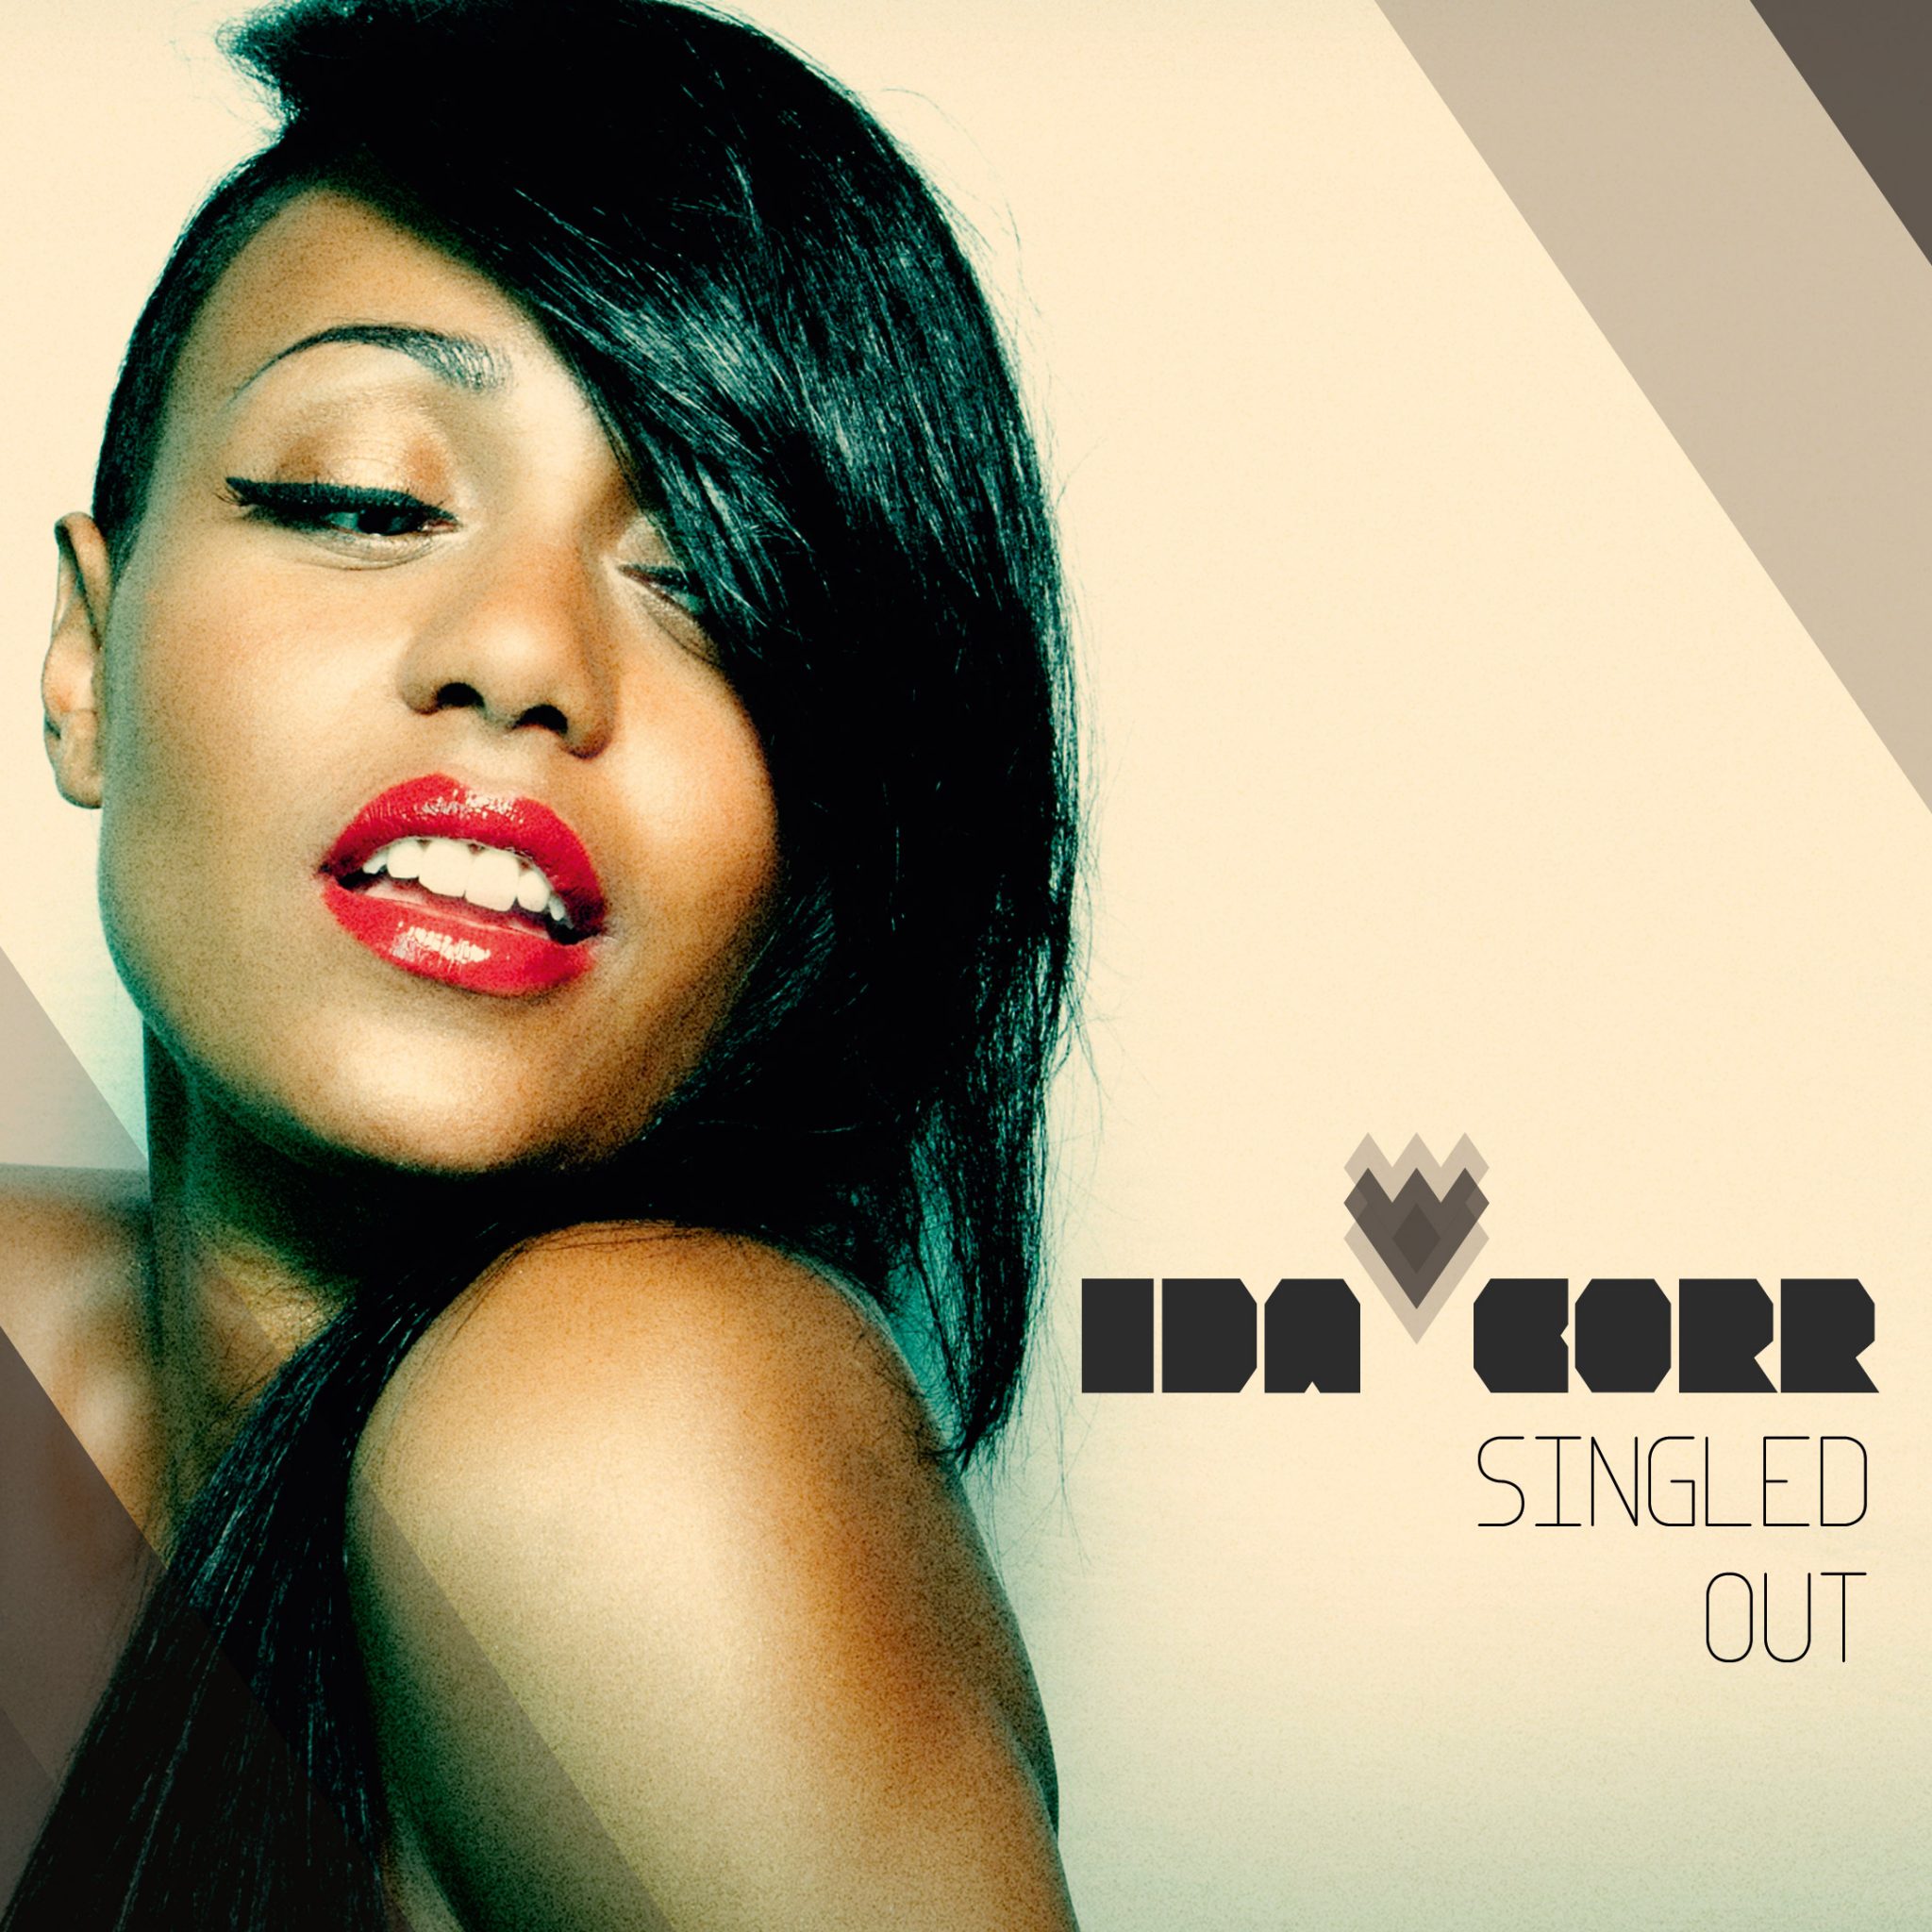 Ida Corr - "Singled Out"